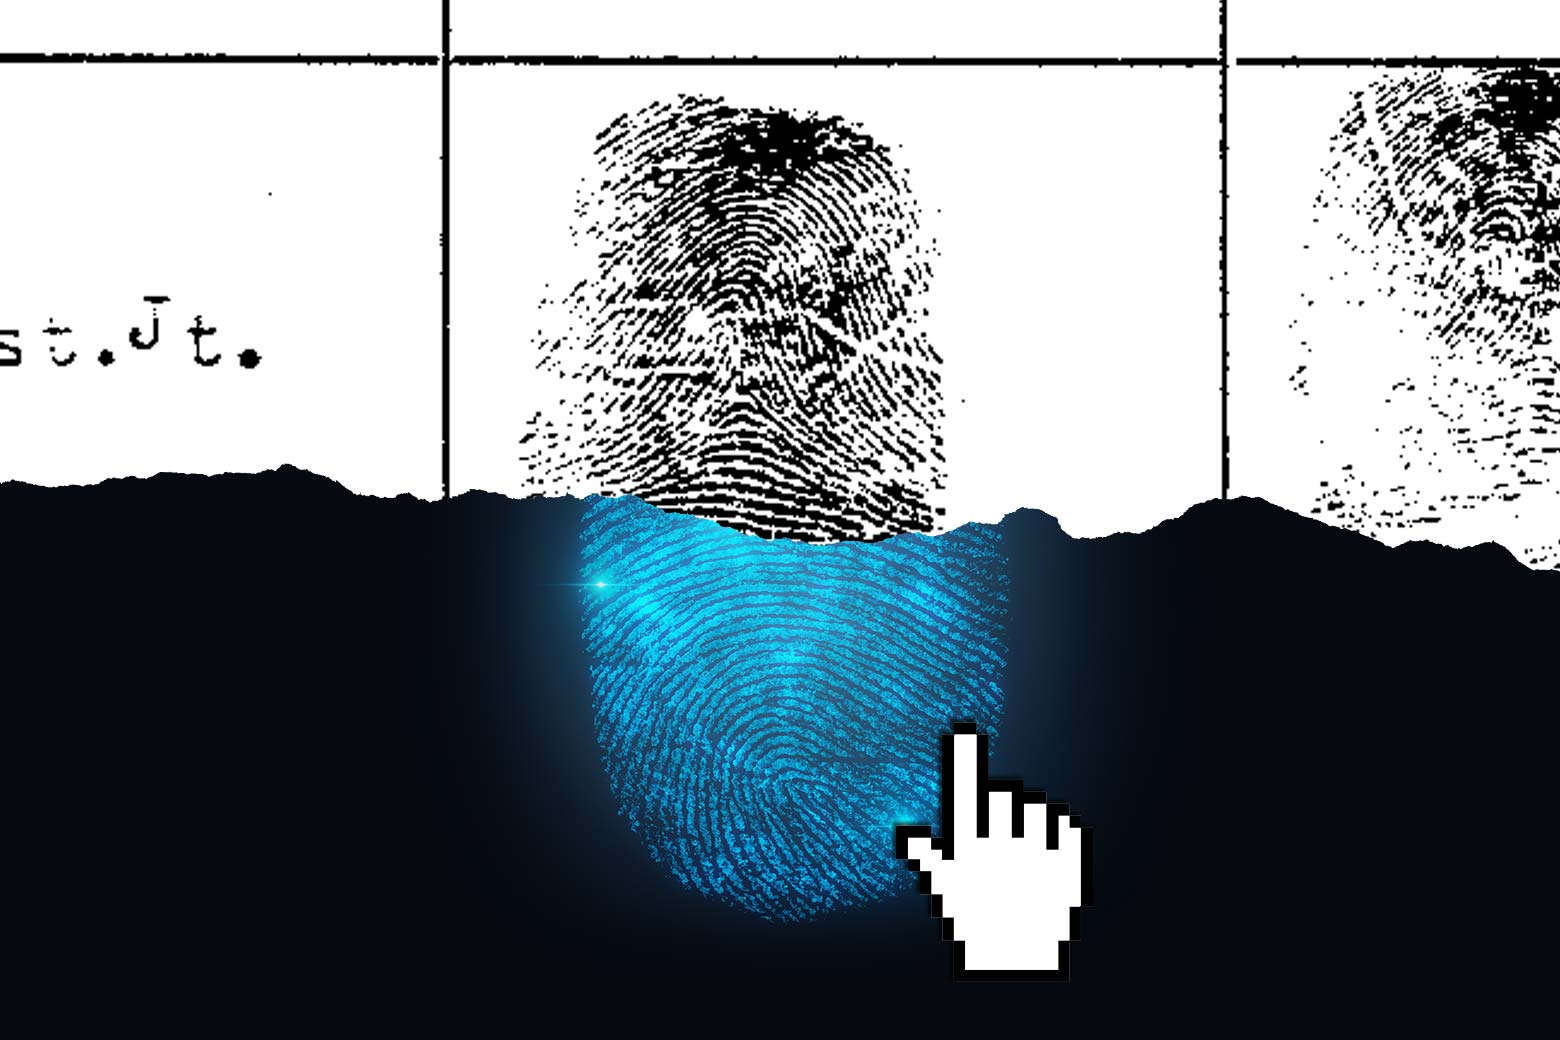 Photo illustration of a fingerprint on paper and ink and a digital fingerprint